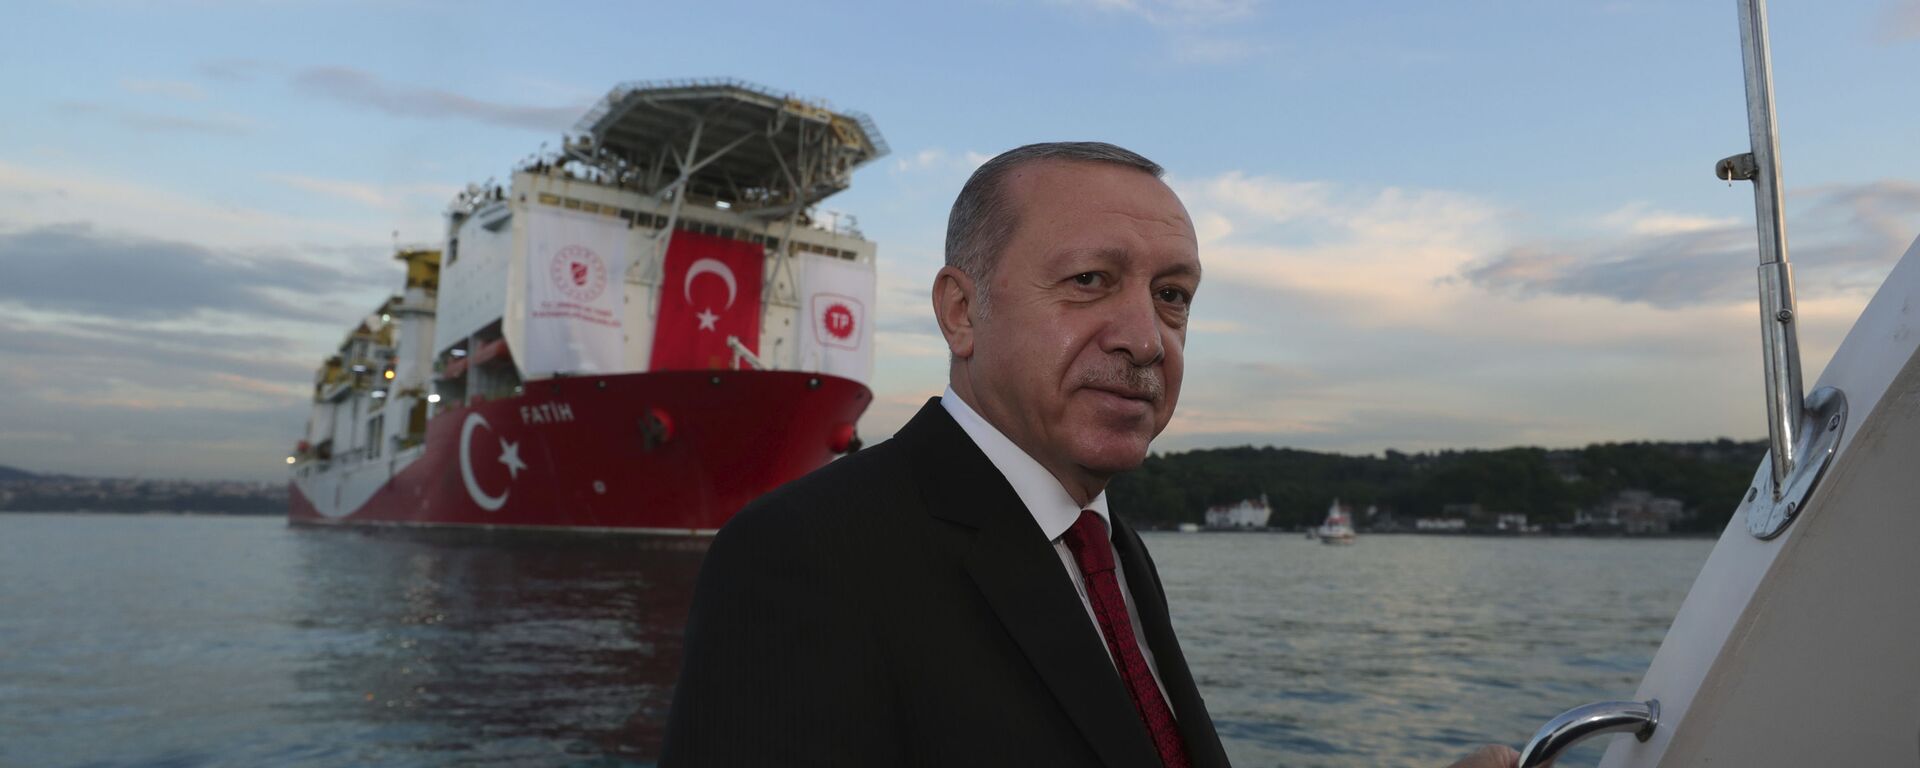 Президент Турции Реджеп Тайип Эрдоган на фоне турецкого корабля «Фатих» (29 мая 2020). Стамбул  - Sputnik Армения, 1920, 28.10.2021